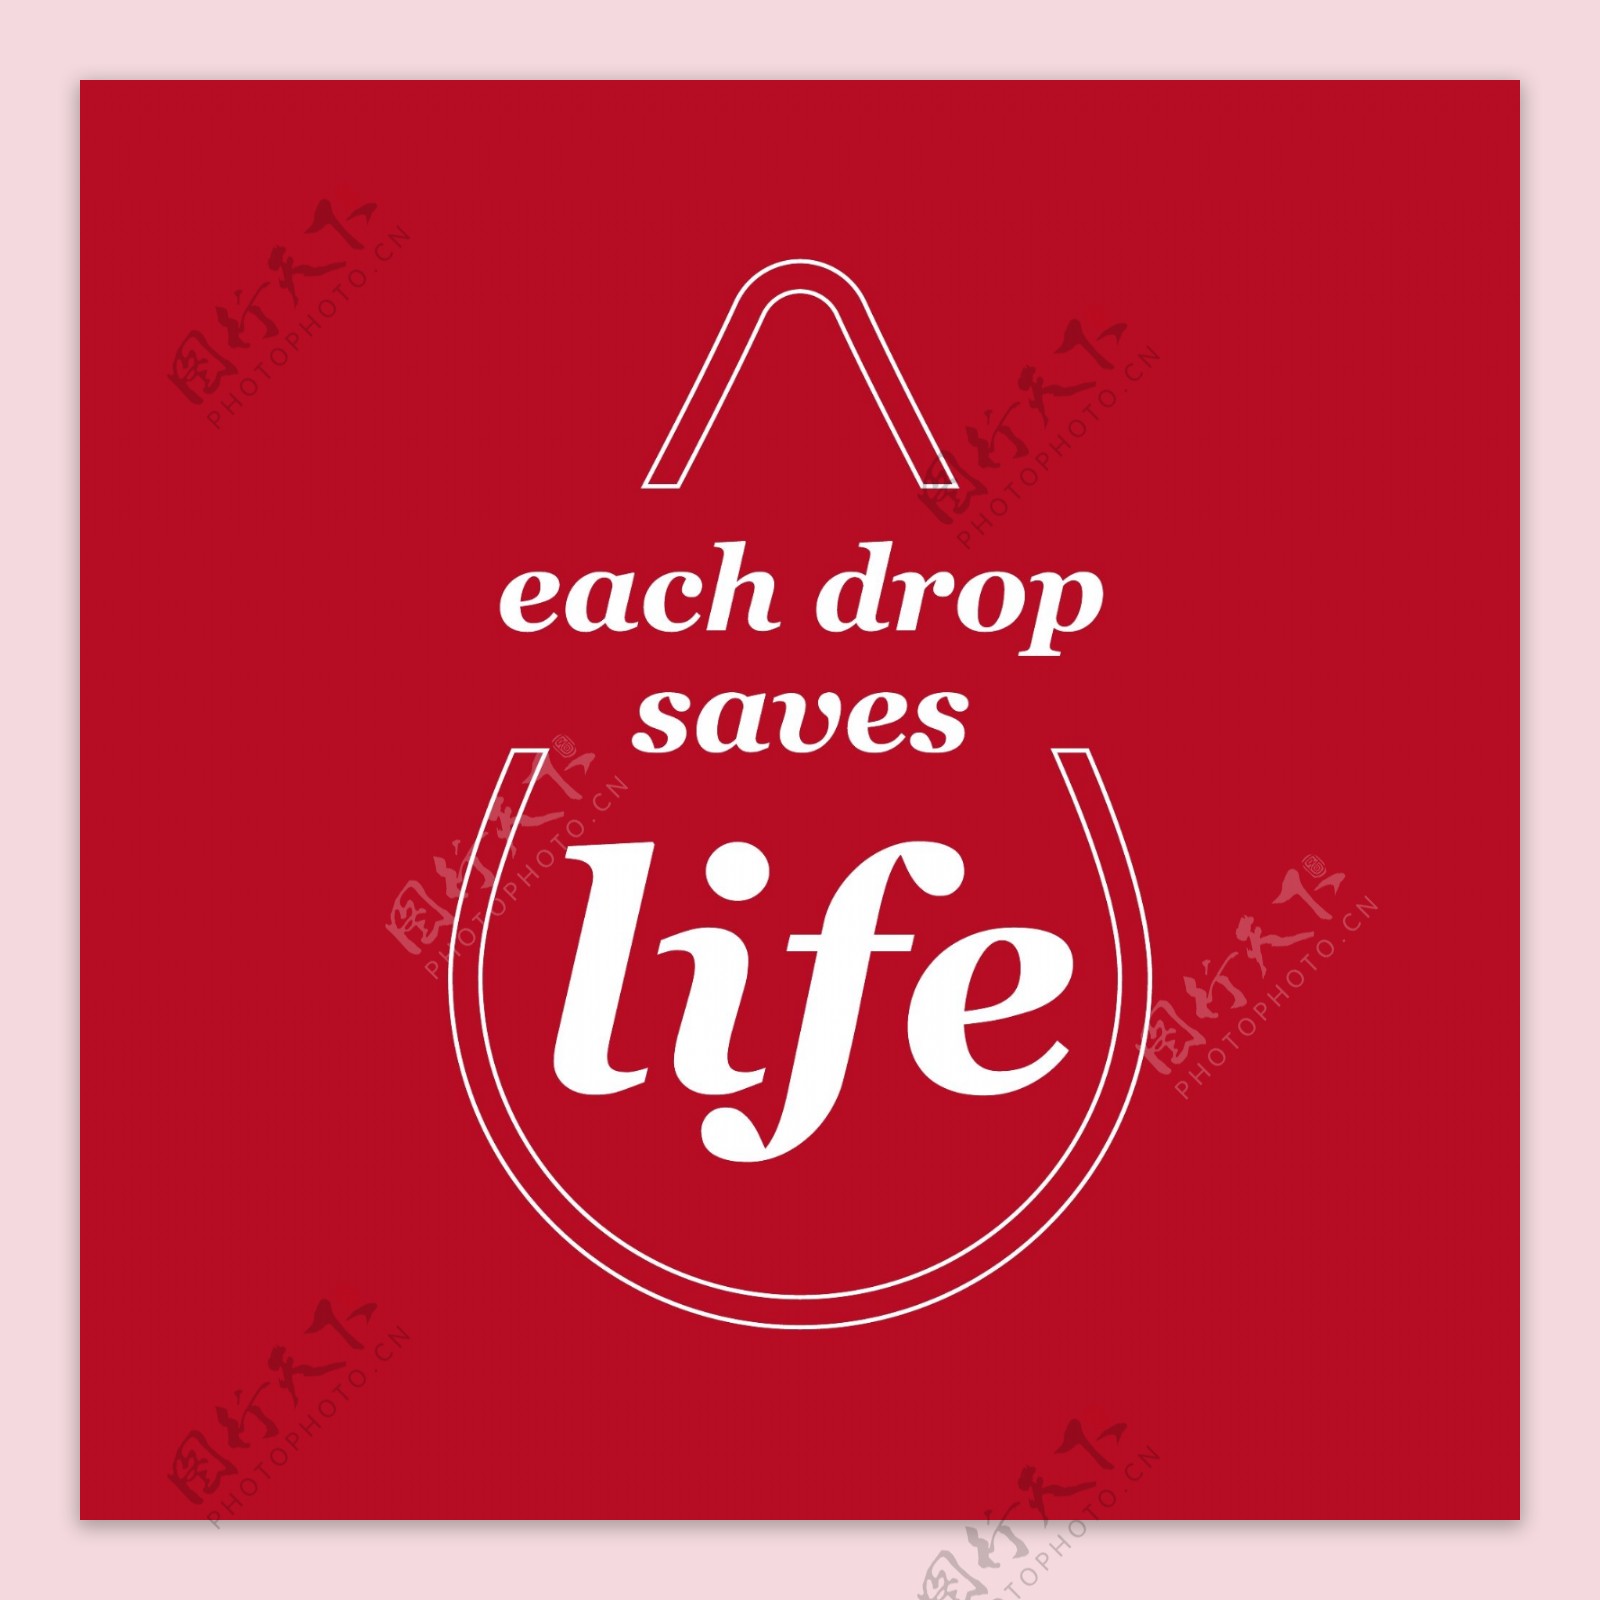 每一滴水救生命红色背景